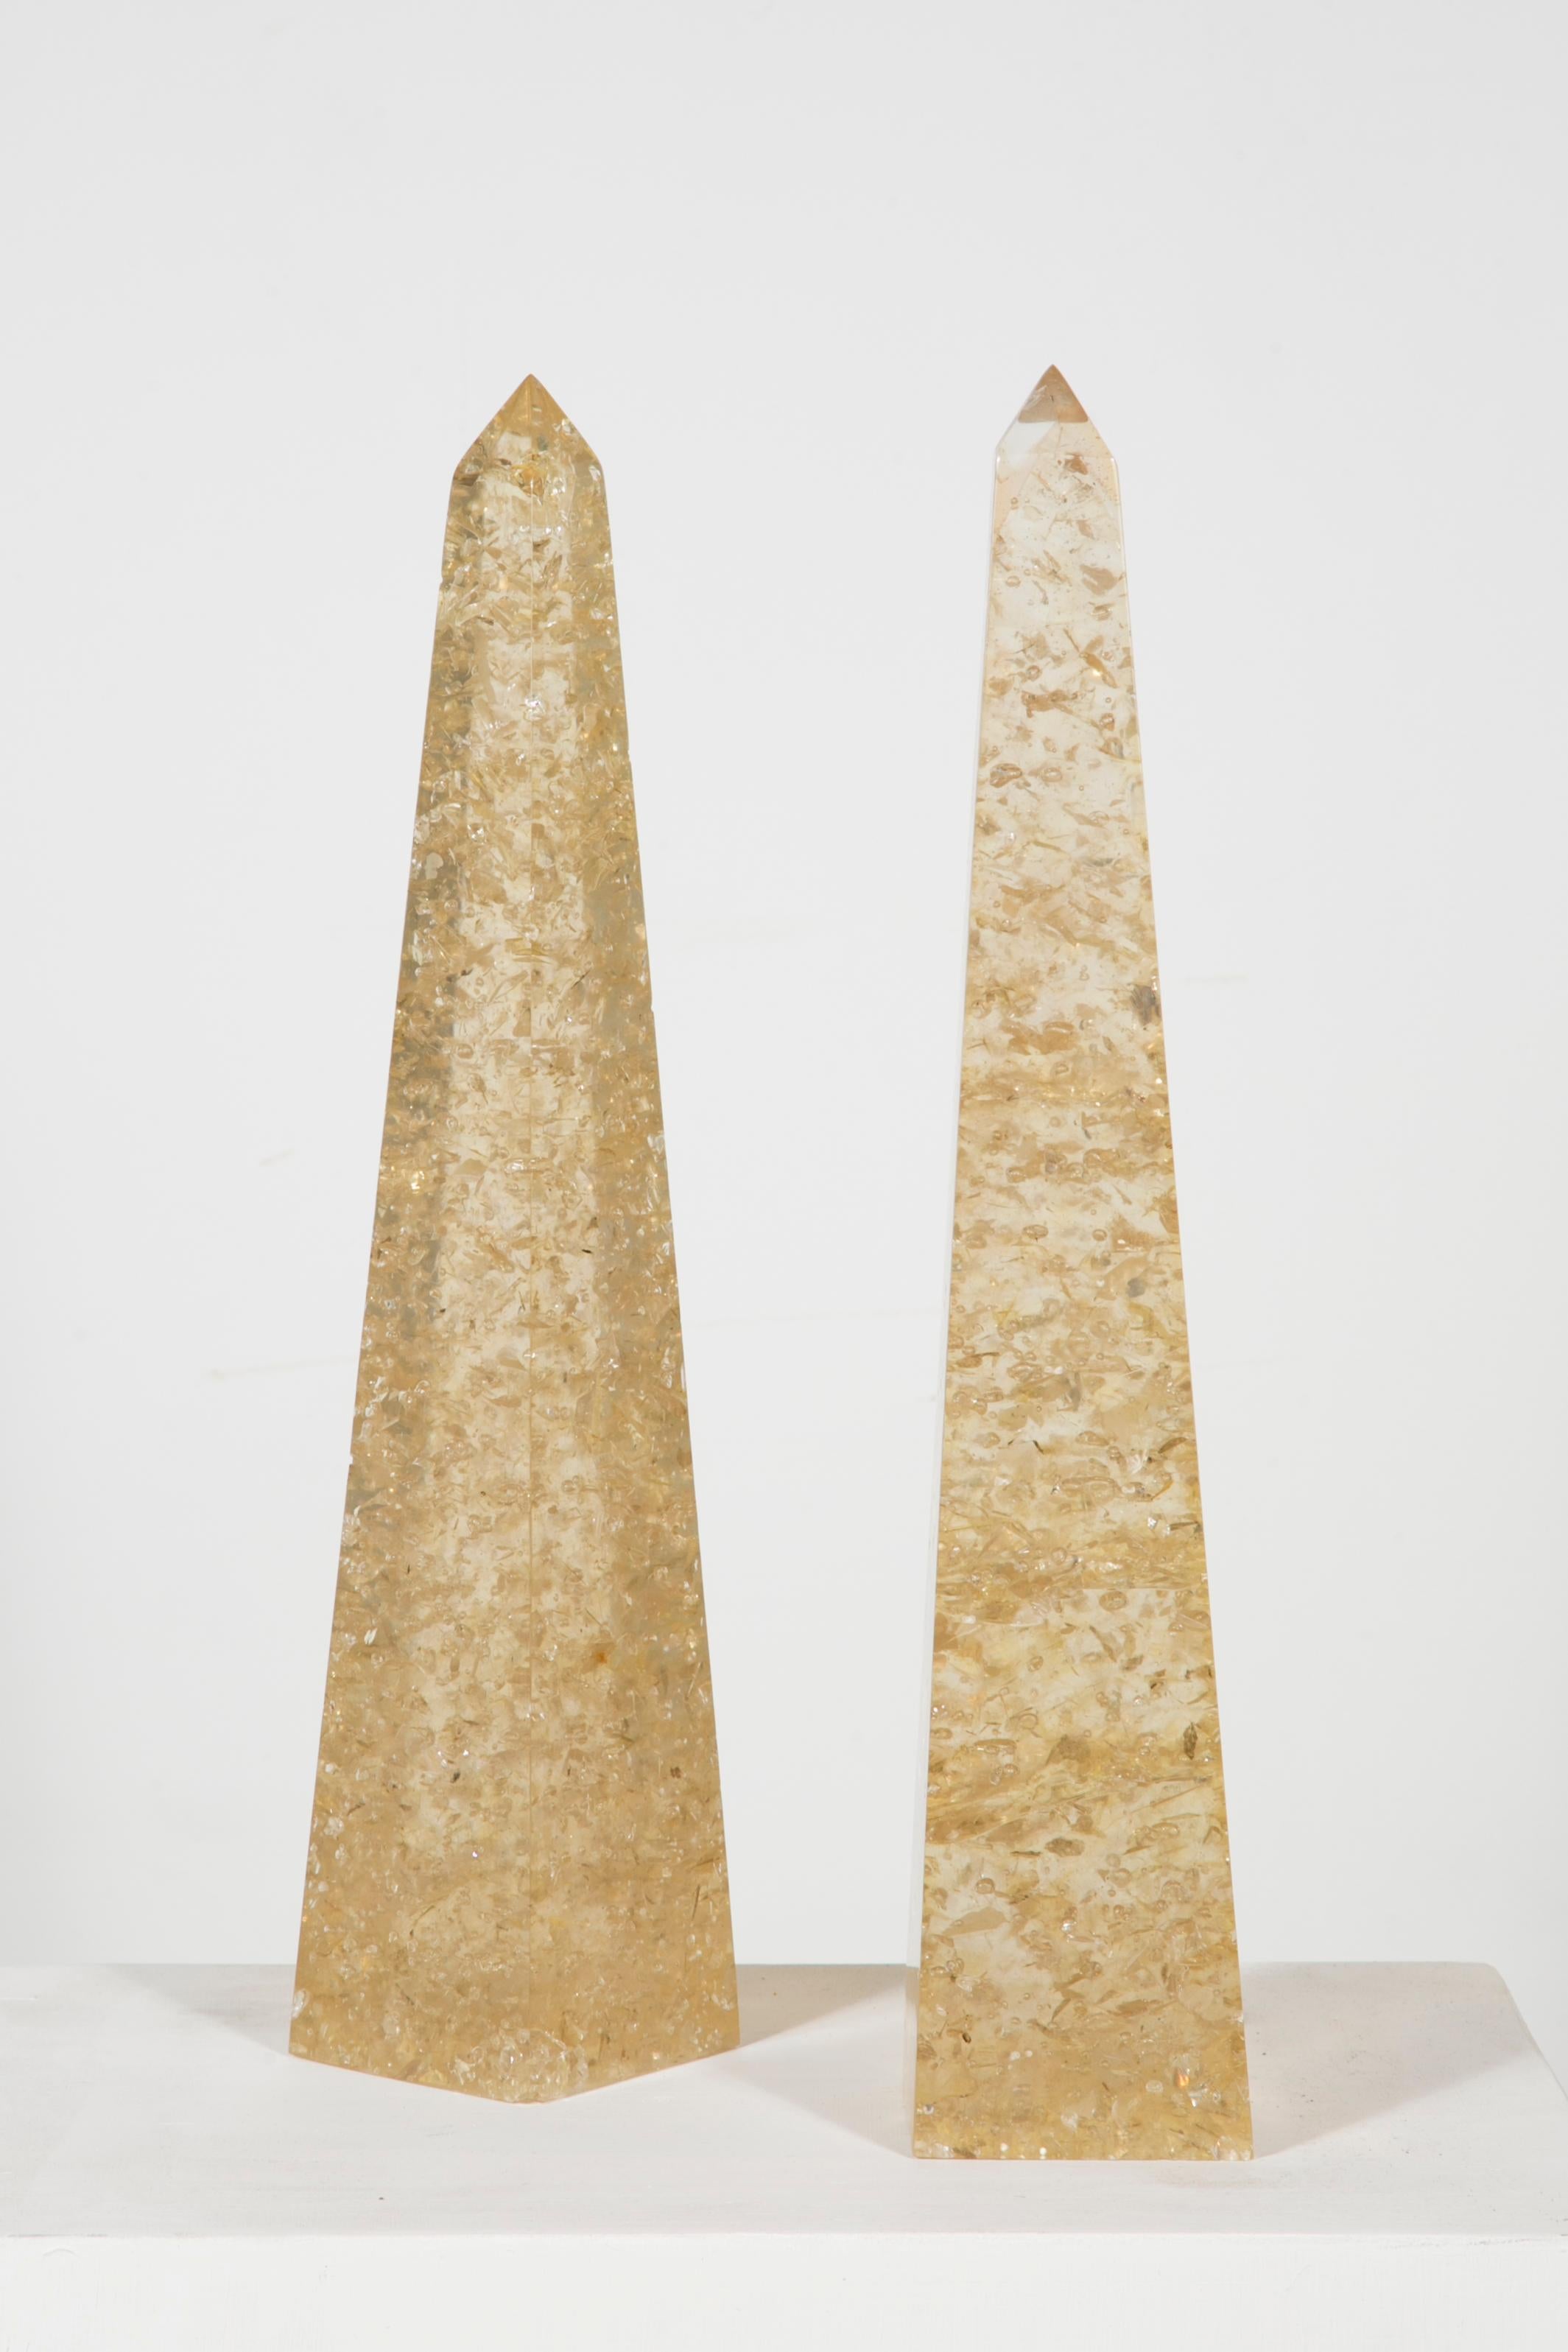 French Pair of Obelisk, Giraudon, 1970